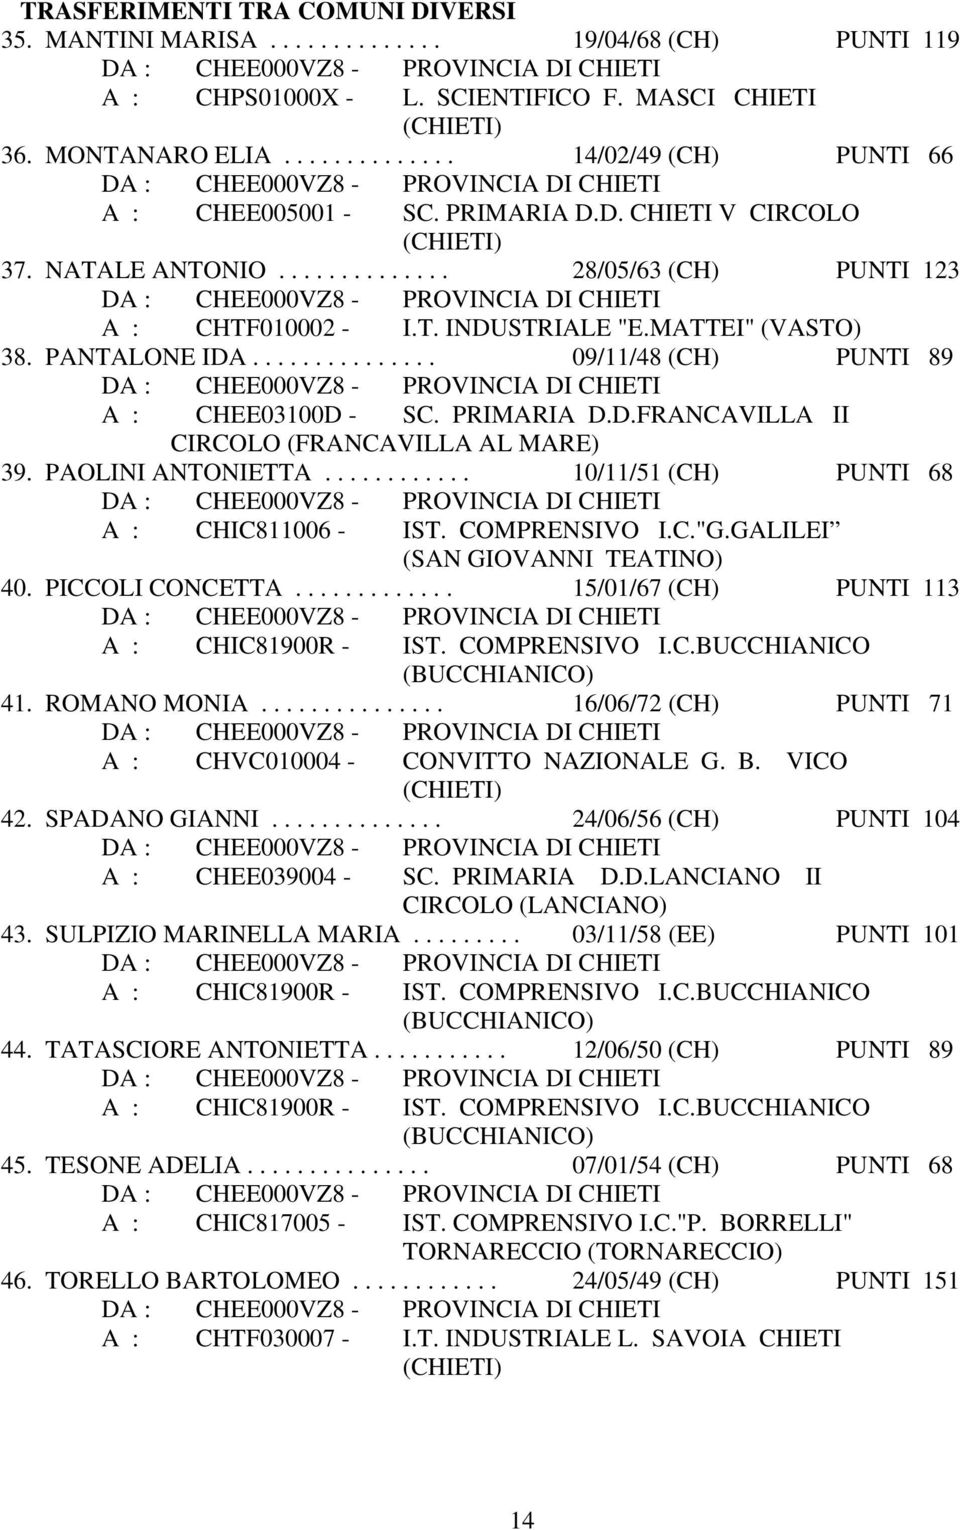 PRIMARIA D.D.FRANCAVILLA II CIRCOLO (FRANCAVILLA AL MARE) 39. PAOLINI ANTONIETTA............ 10/11/51 (CH) PUNTI 68 A : CHIC811006 - IST. COMPRENSIVO I.C."G.GALILEI (SAN GIOVANNI TEATINO) 40.